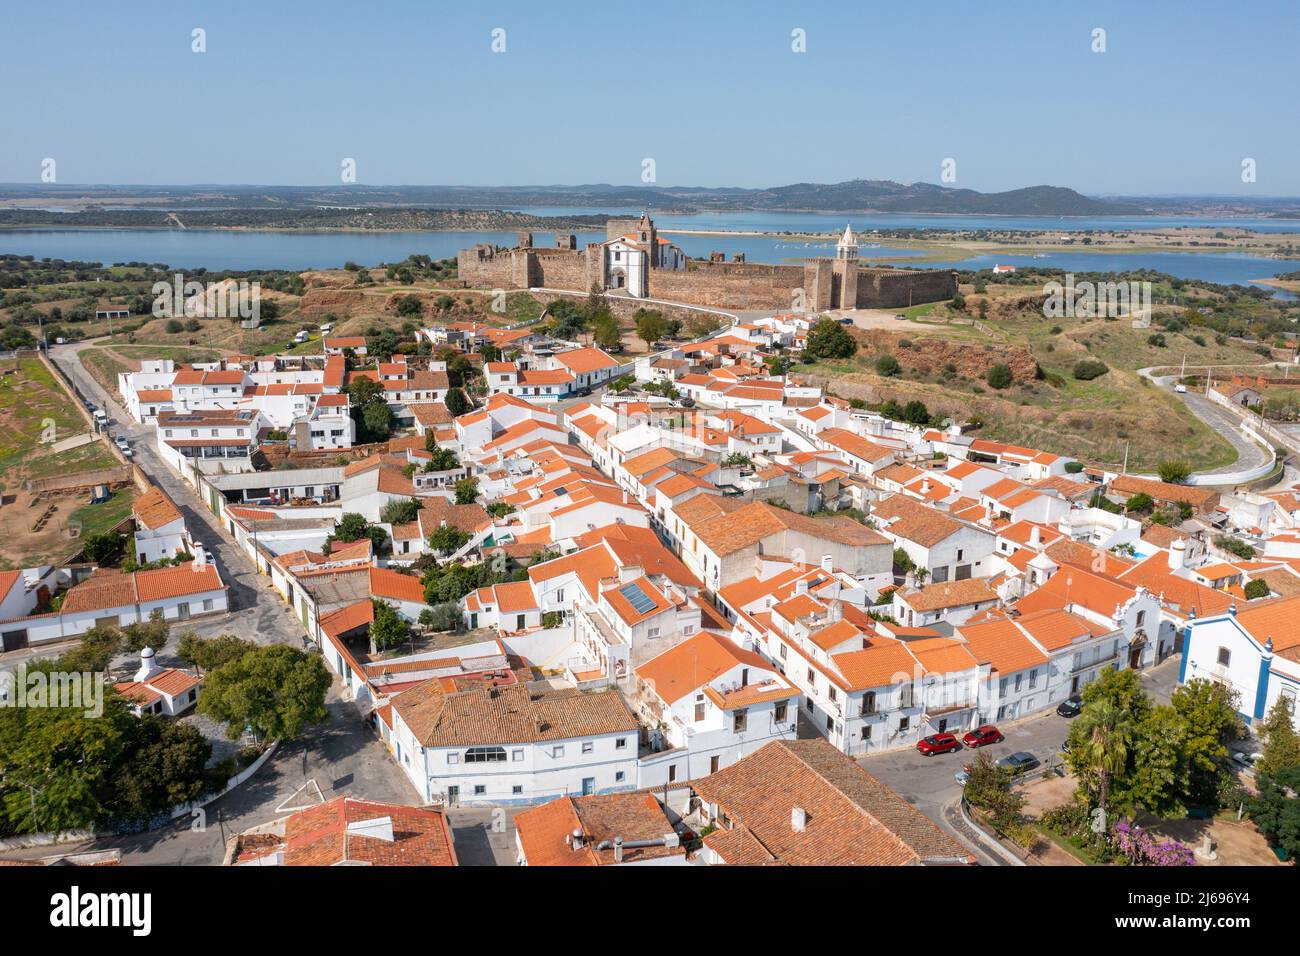 Castelo de Mourão, Mourão, Portugal Stock Photo